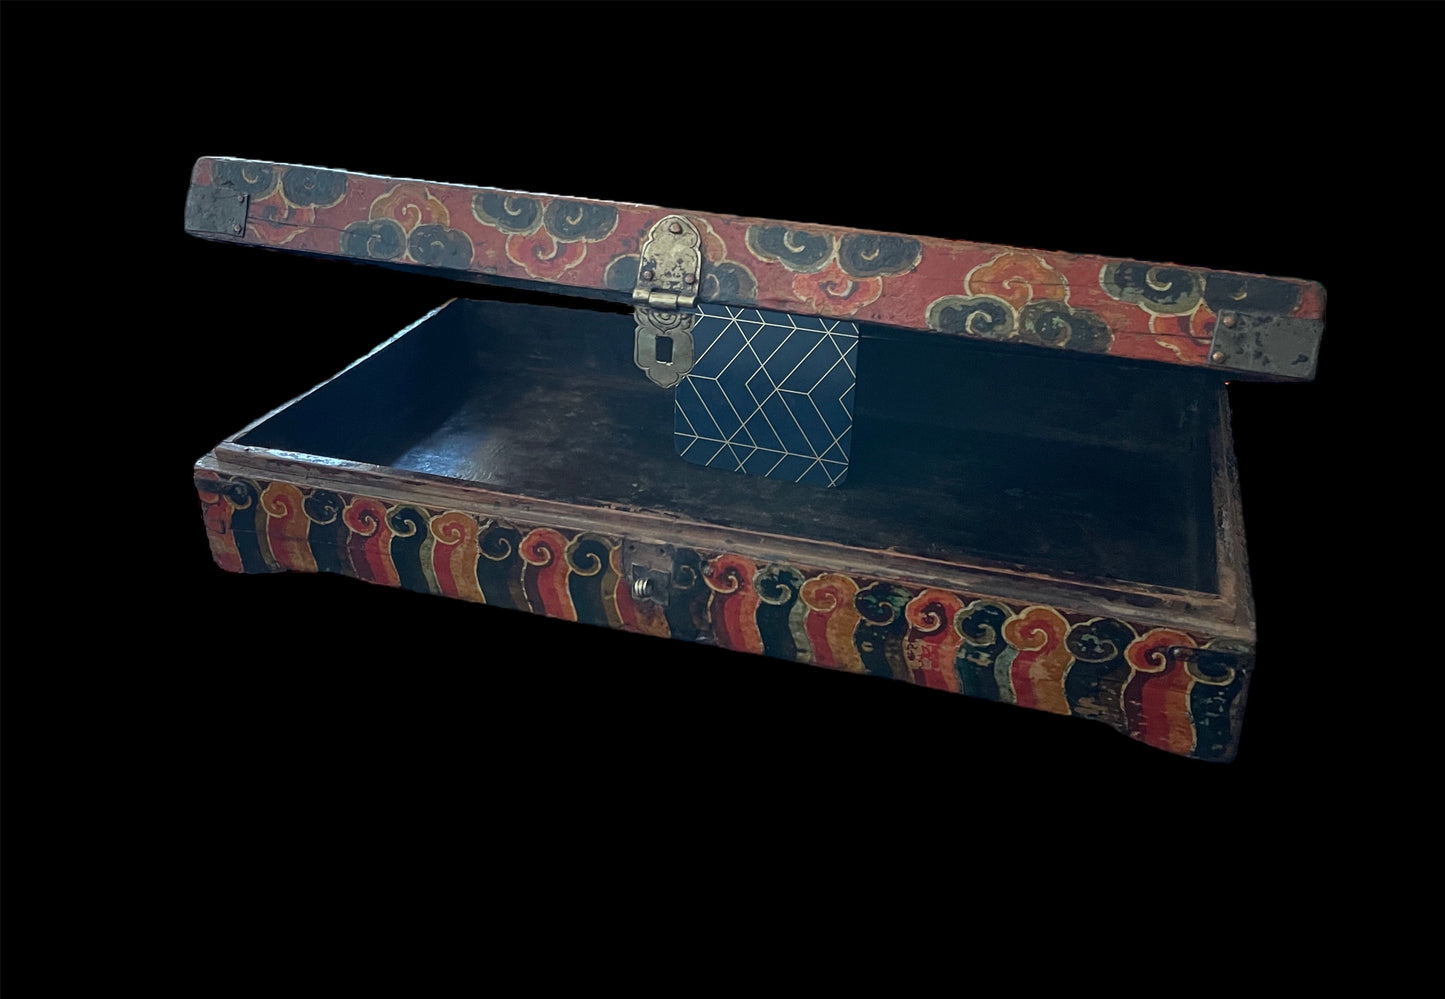 An antique rectangular flat Tibetan wood box